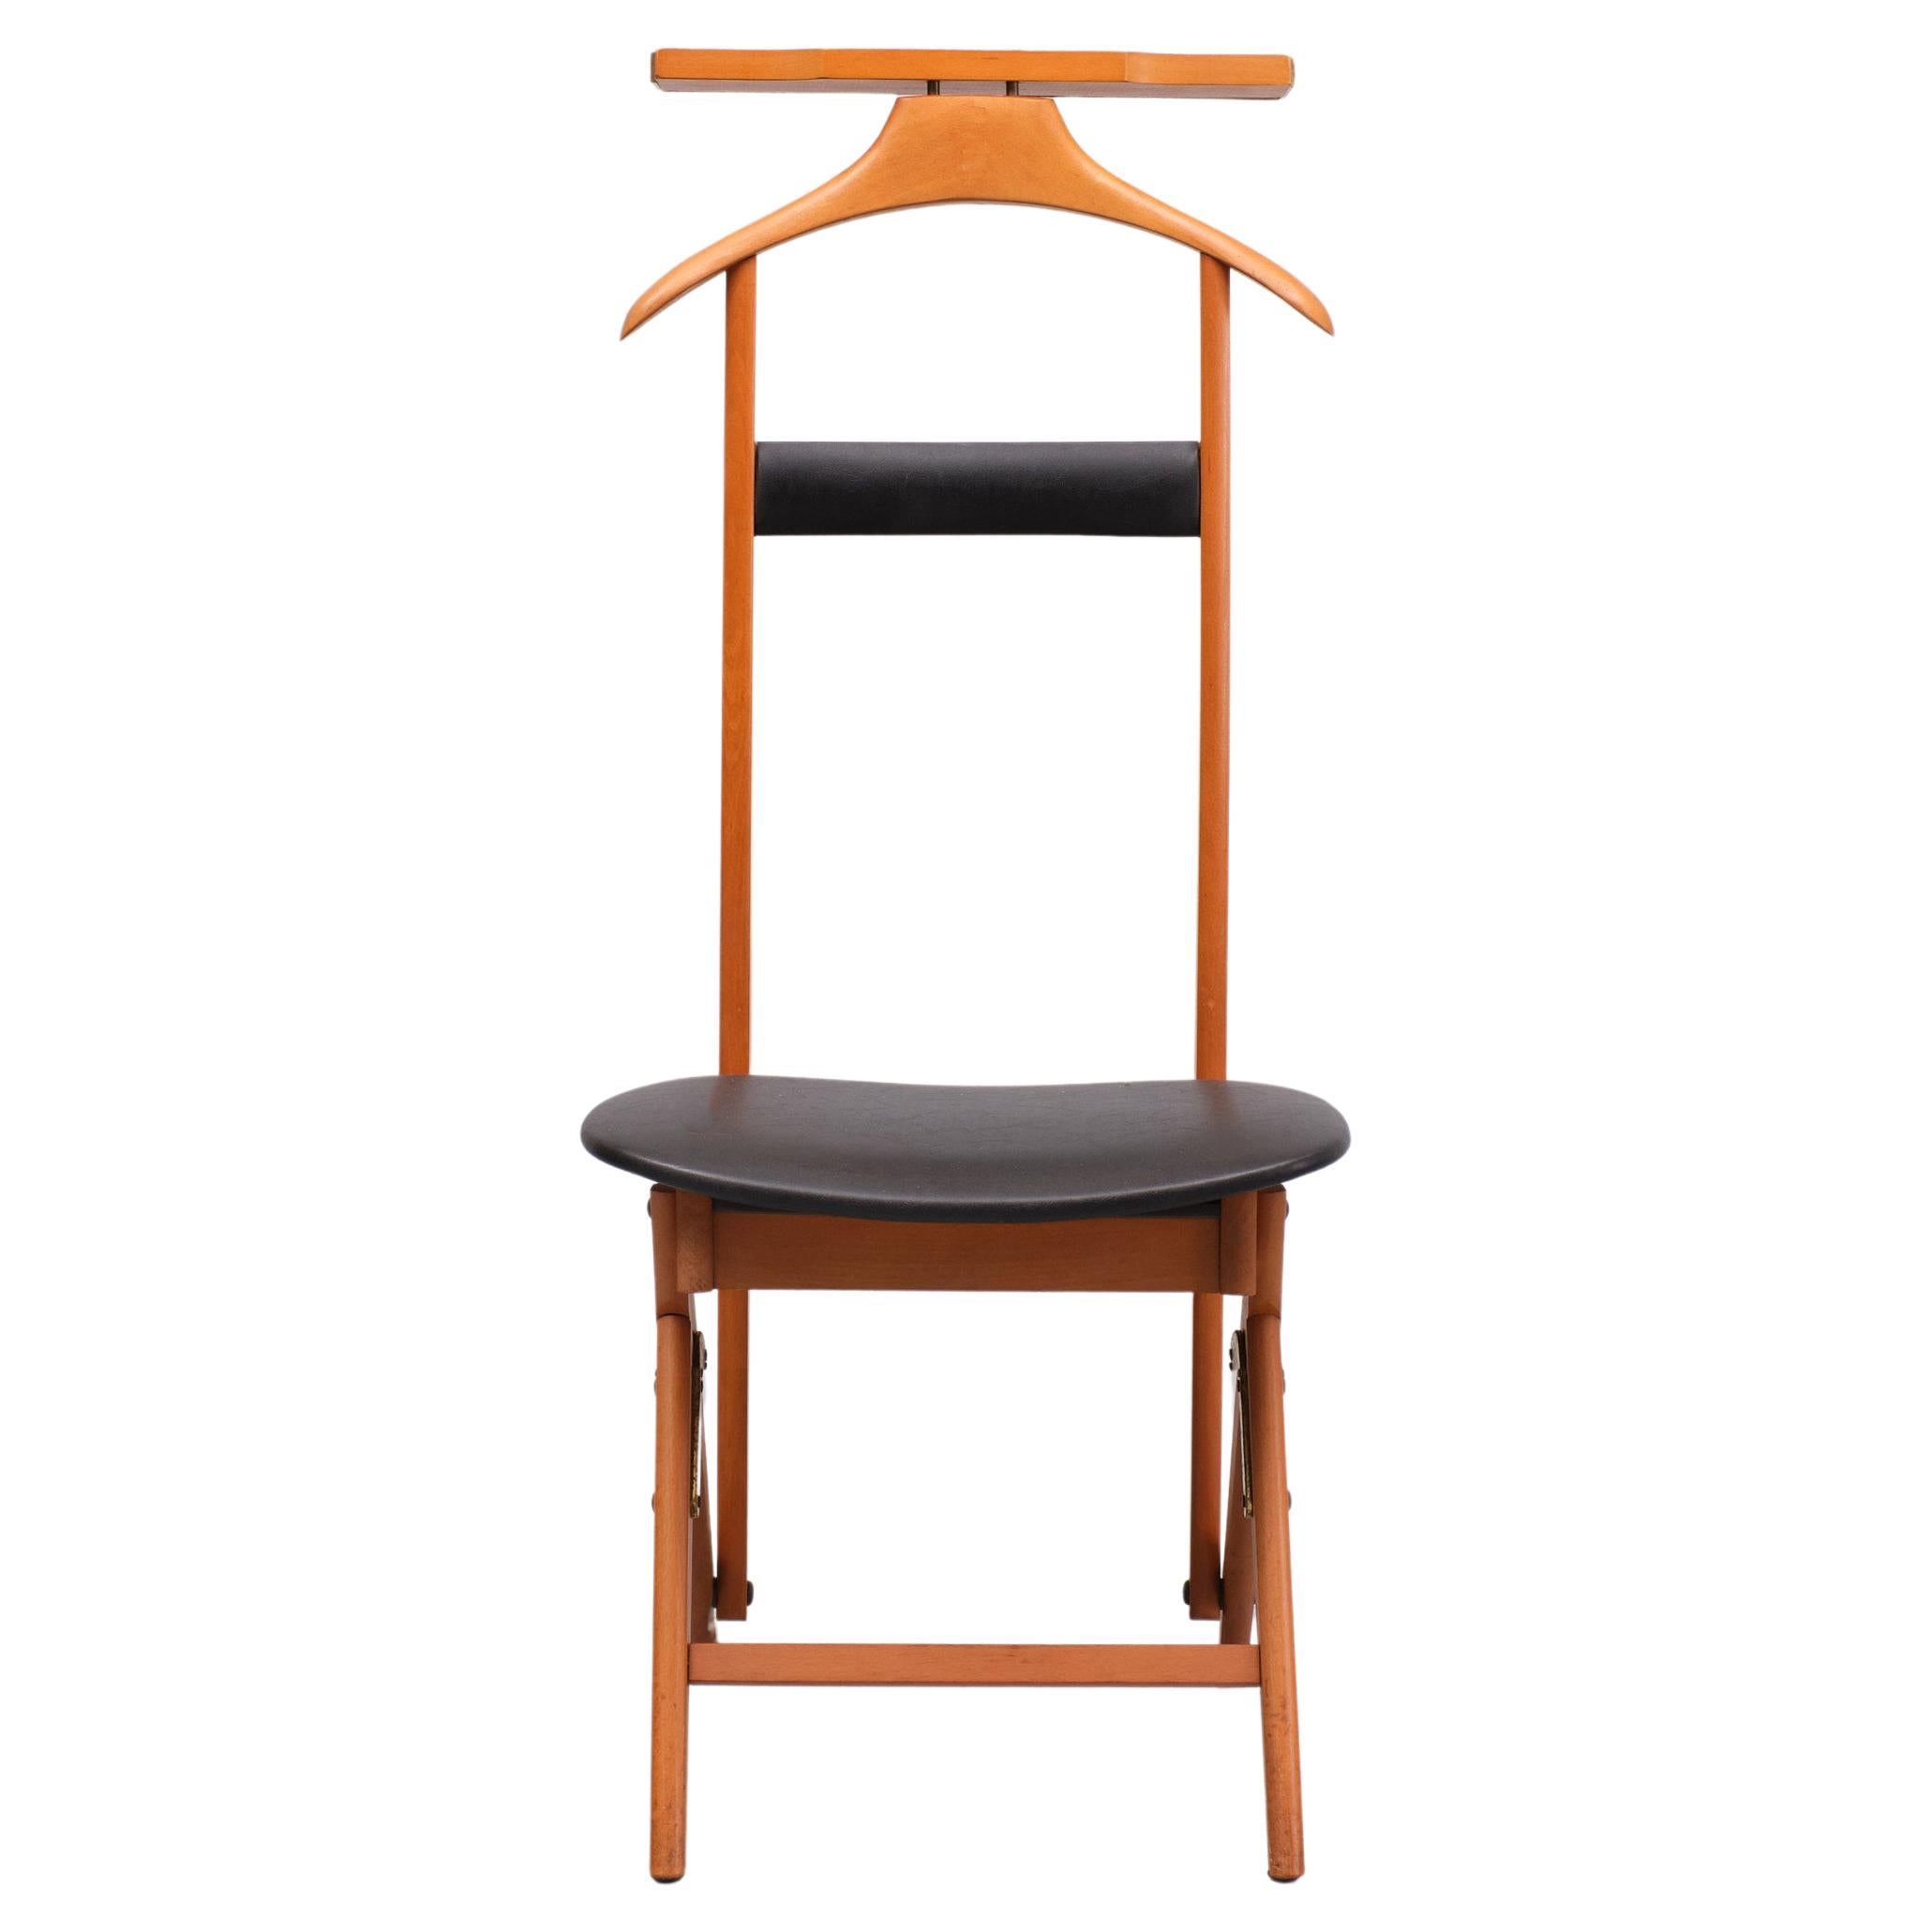 Très rare design du milieu du siècle, Design/One et chaise en 1, un design de Ico & Luisa Parisi pour Fratelli Reguitti Italie. Également appelé 